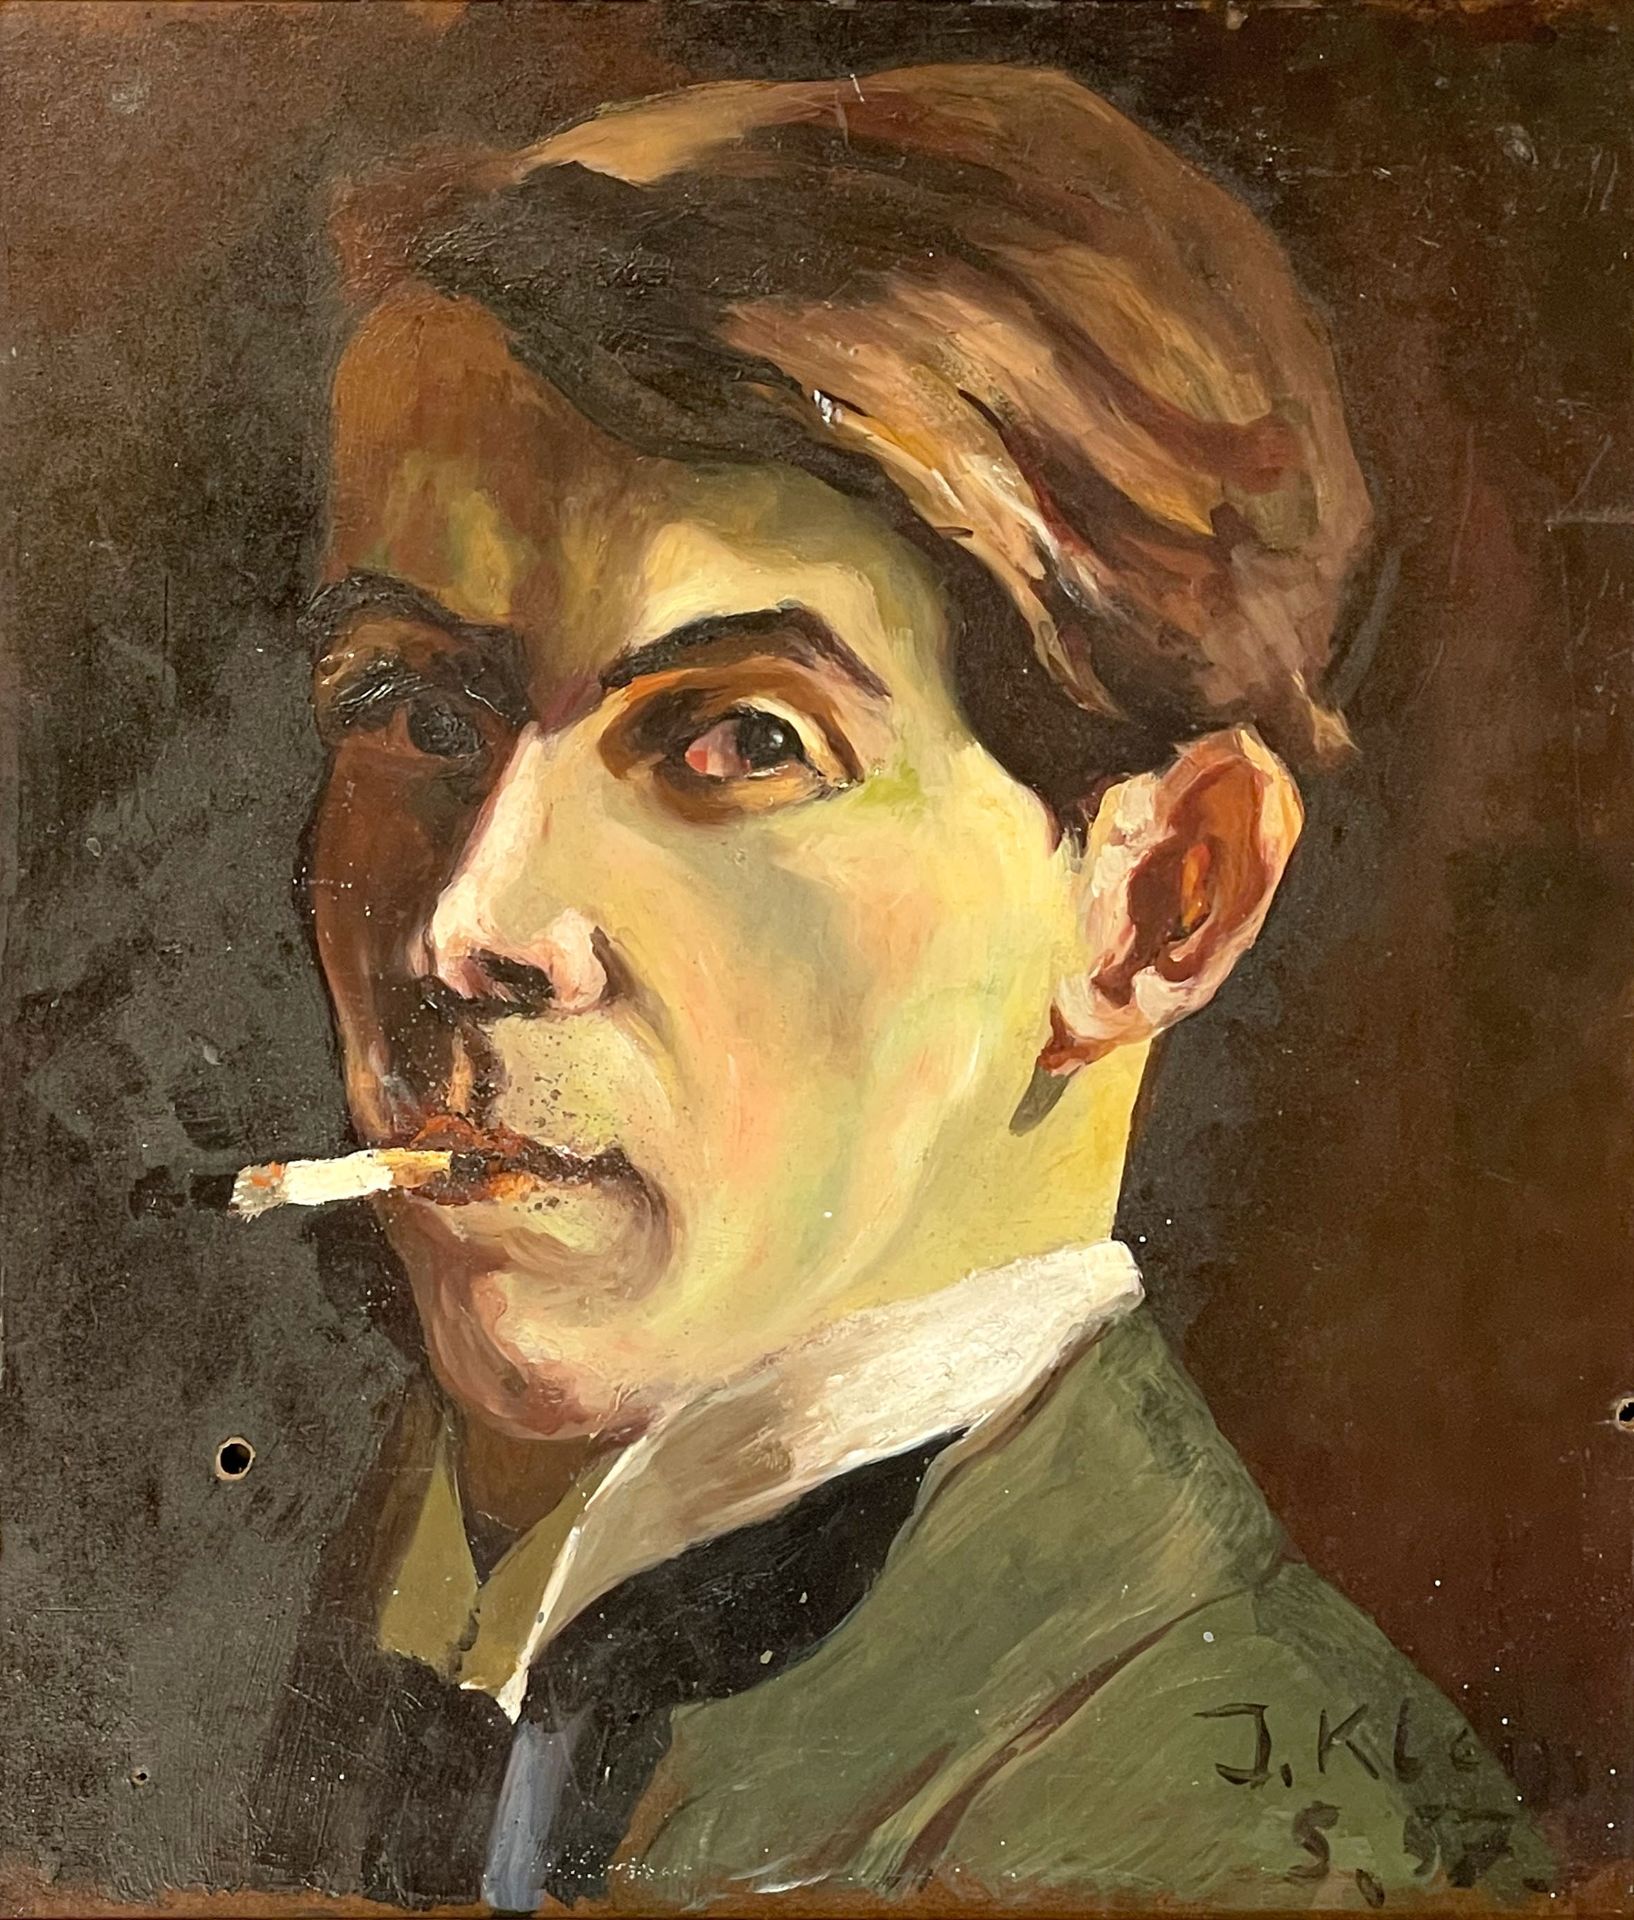 J. KLEIN (XX). Herrenportrait mit Zigarette (1957).